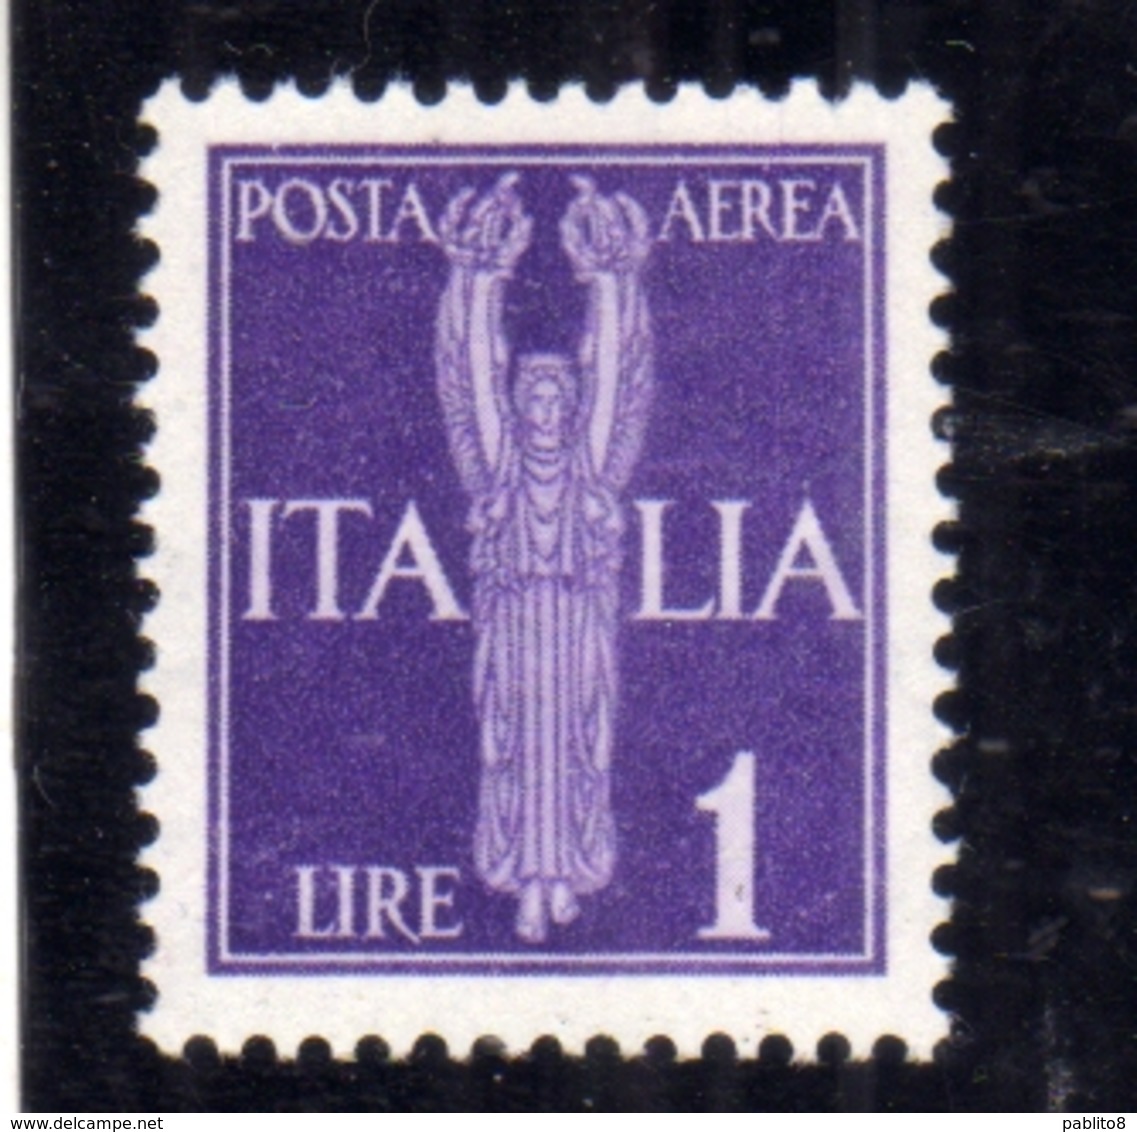 ITALIA REGNO ITALY KINGDOM 1944 REPUBBLICA SOCIALE ITALIANA RSI GNR POSTA AEREA AIR MAIL LIRE 1 MNH OTTIMA CENTRATURA - Airmail